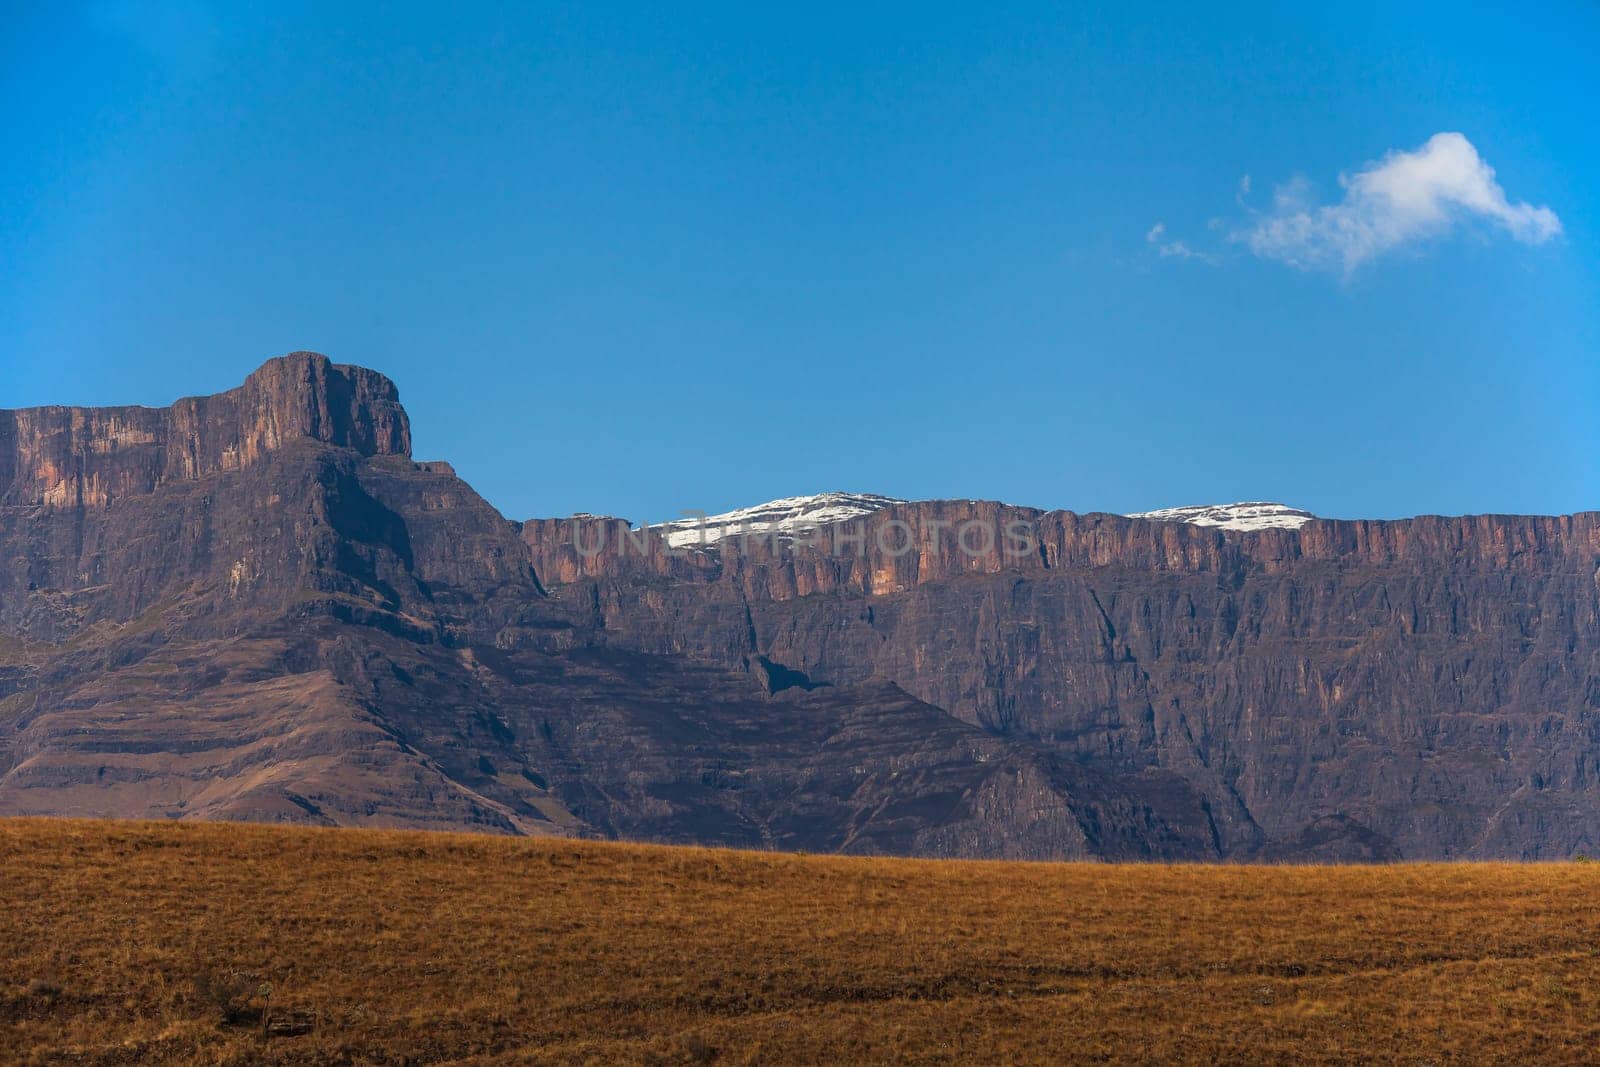 Drakensberg Mountain scene 15598 by kobus_peche